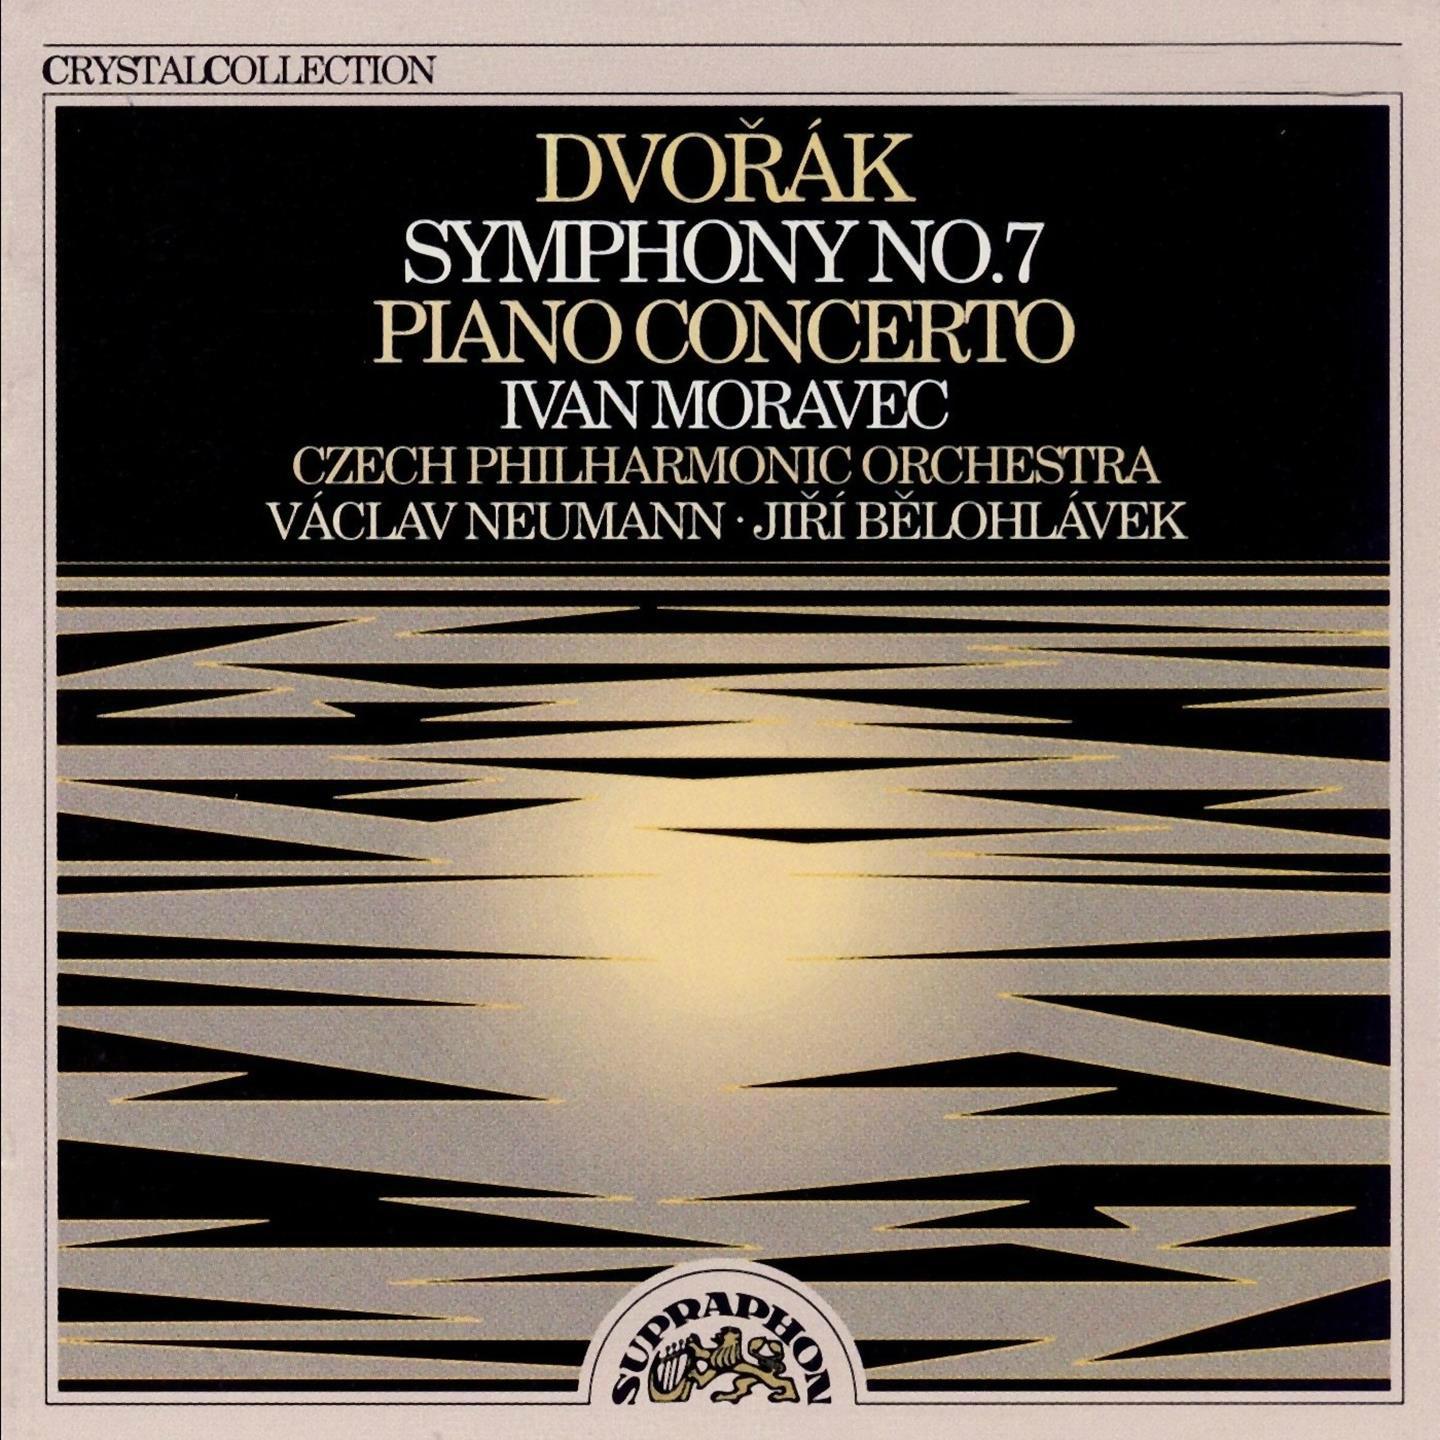 Dvoa k: Symphony No. 7 and Piano Concerto